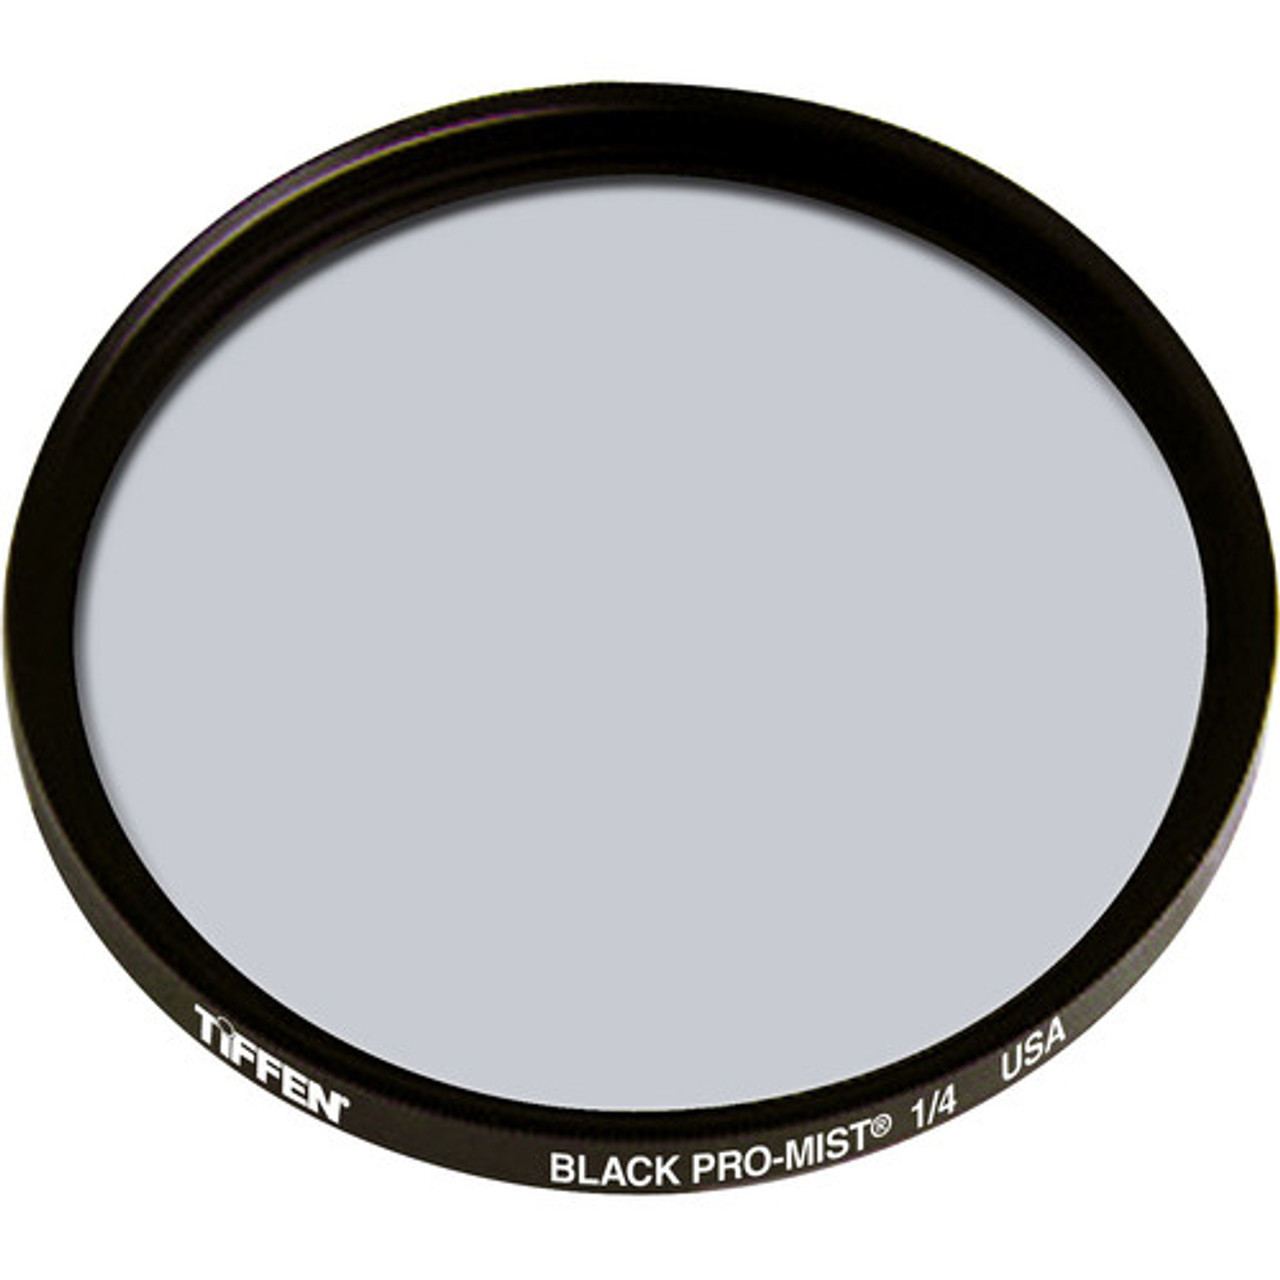 Tiffen 67mm Black Pro-Mist 1/4 Filter | Auckland | NZ